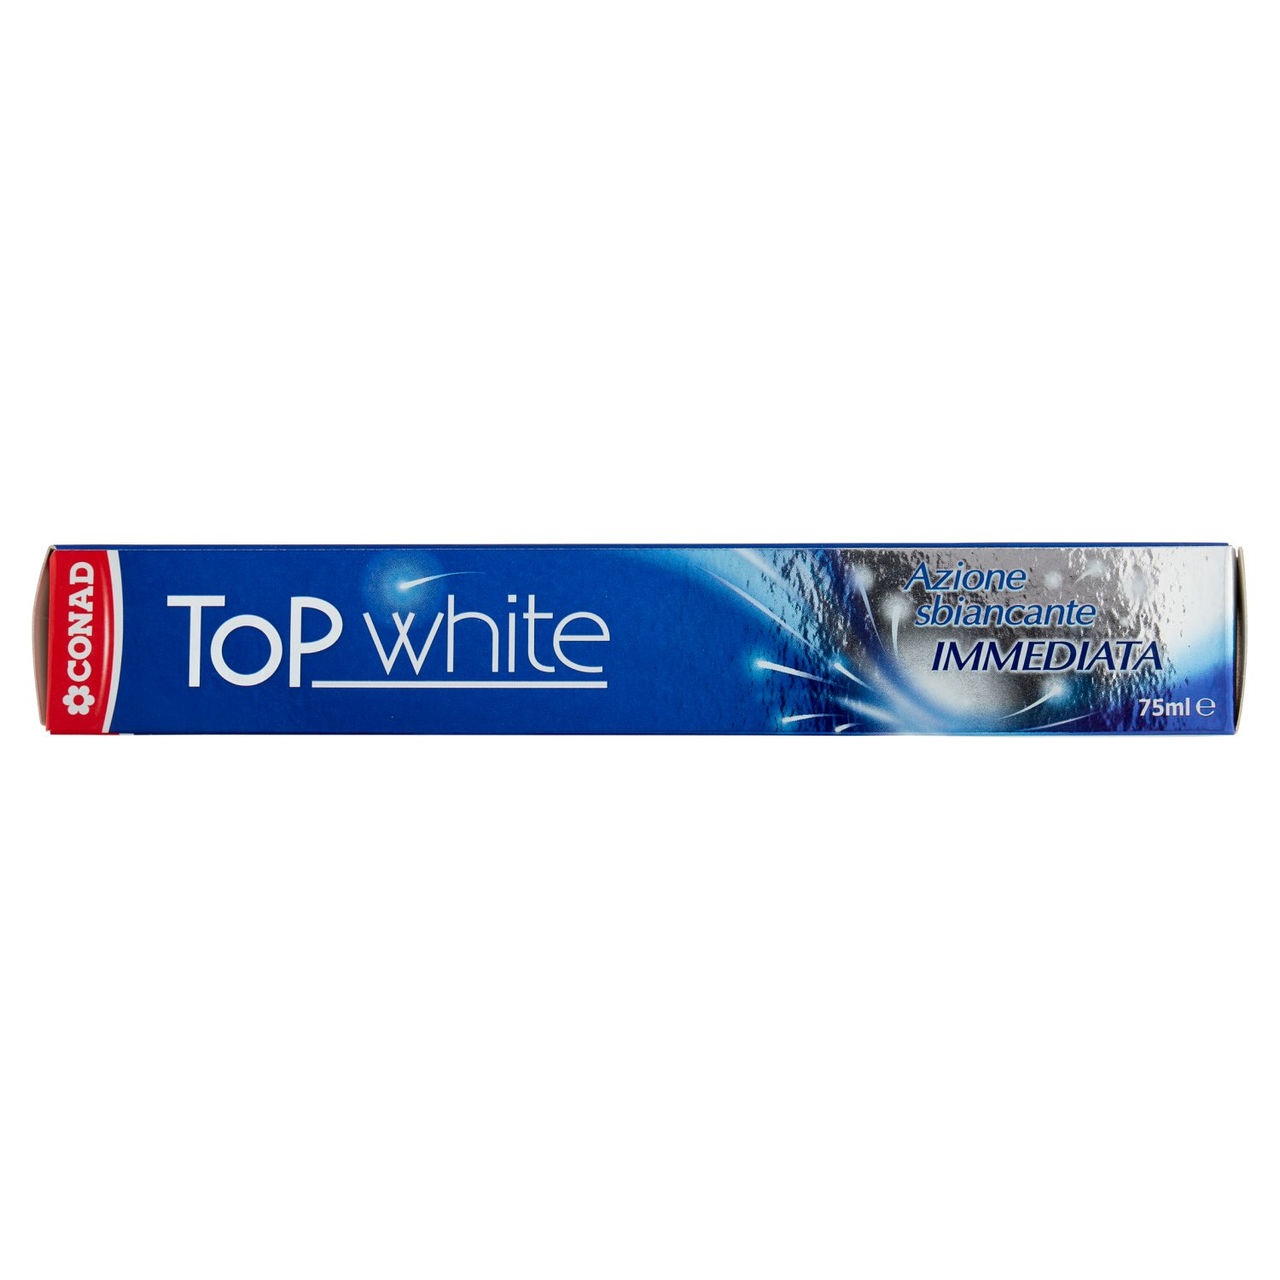 Dentifricio Top White 75 ml Conad online